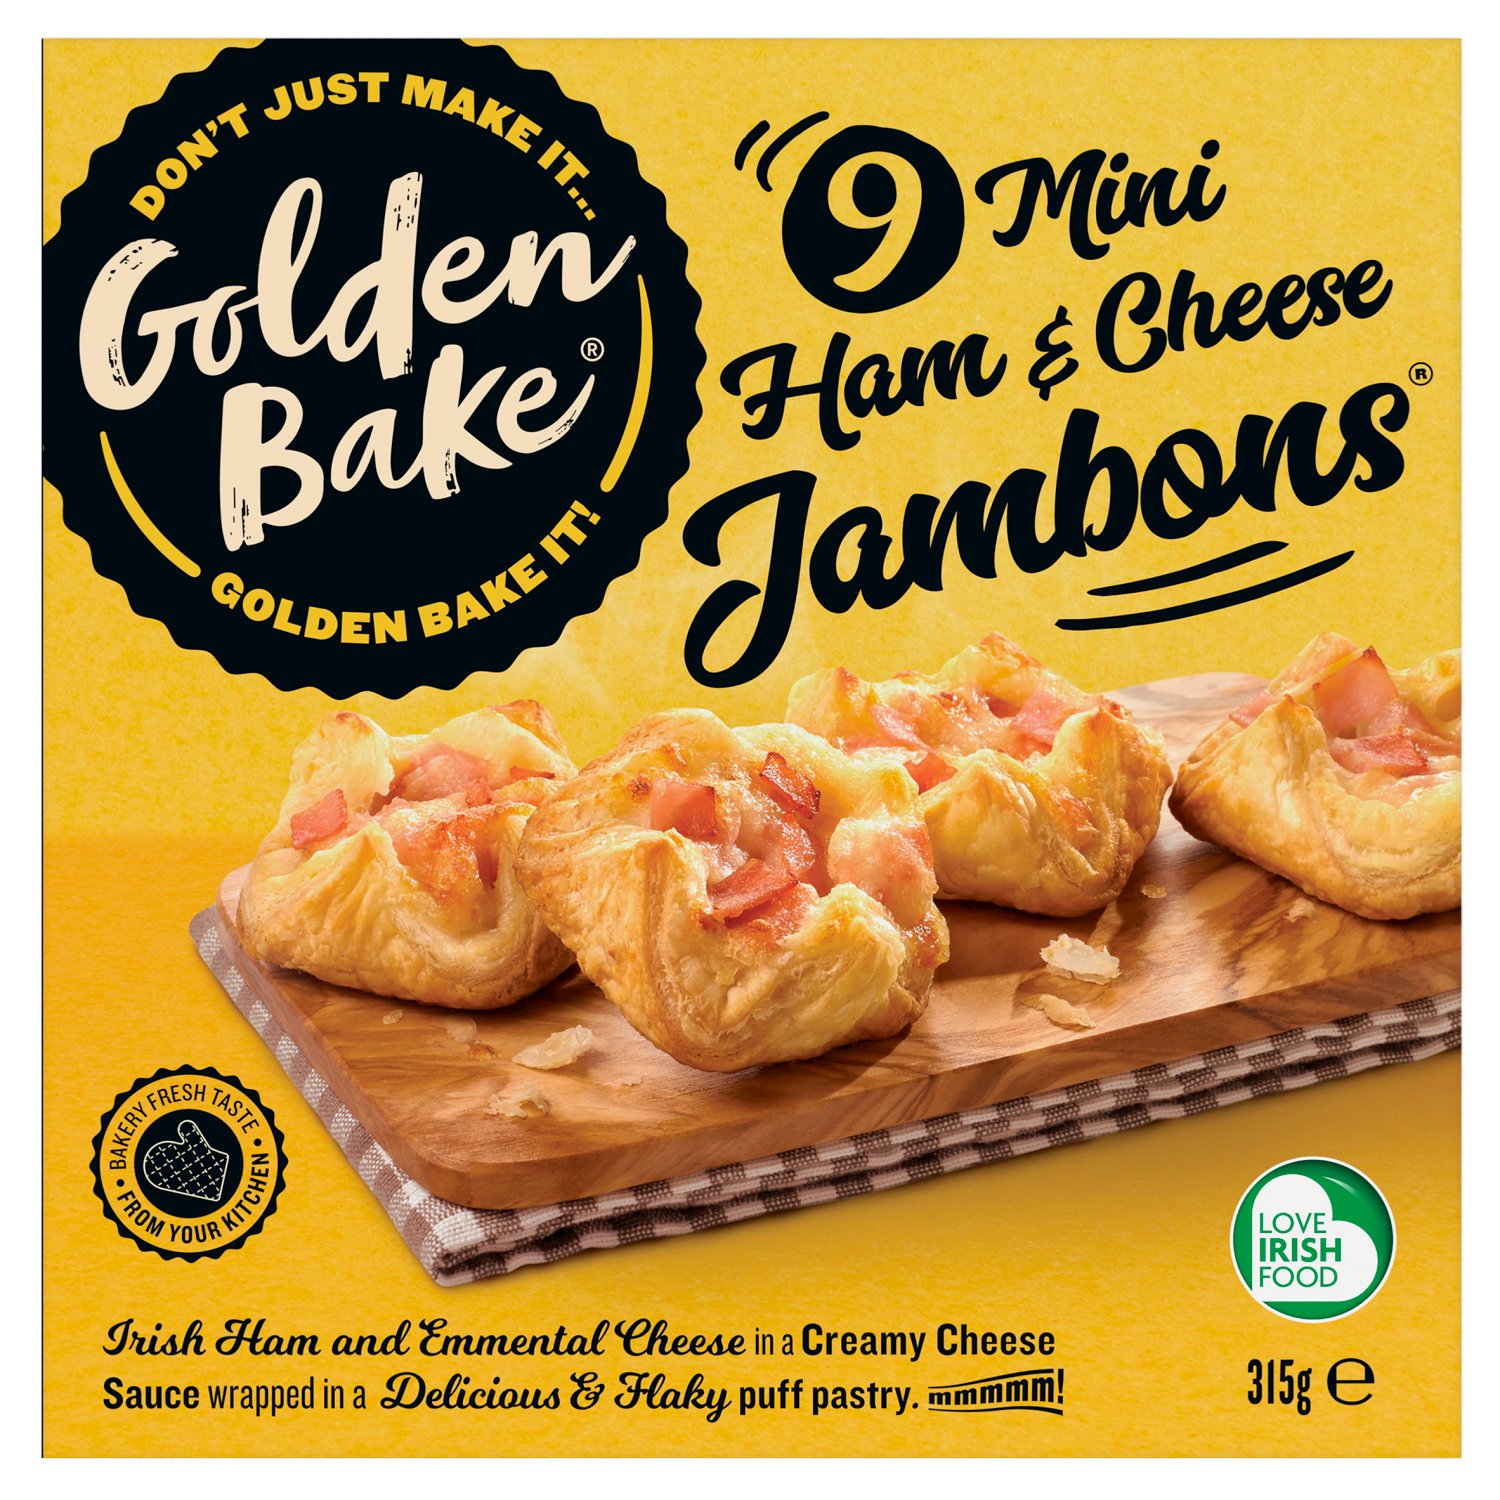 Golden Bake Mini Ham and Cheese Jambons 9 Pack (315 g)